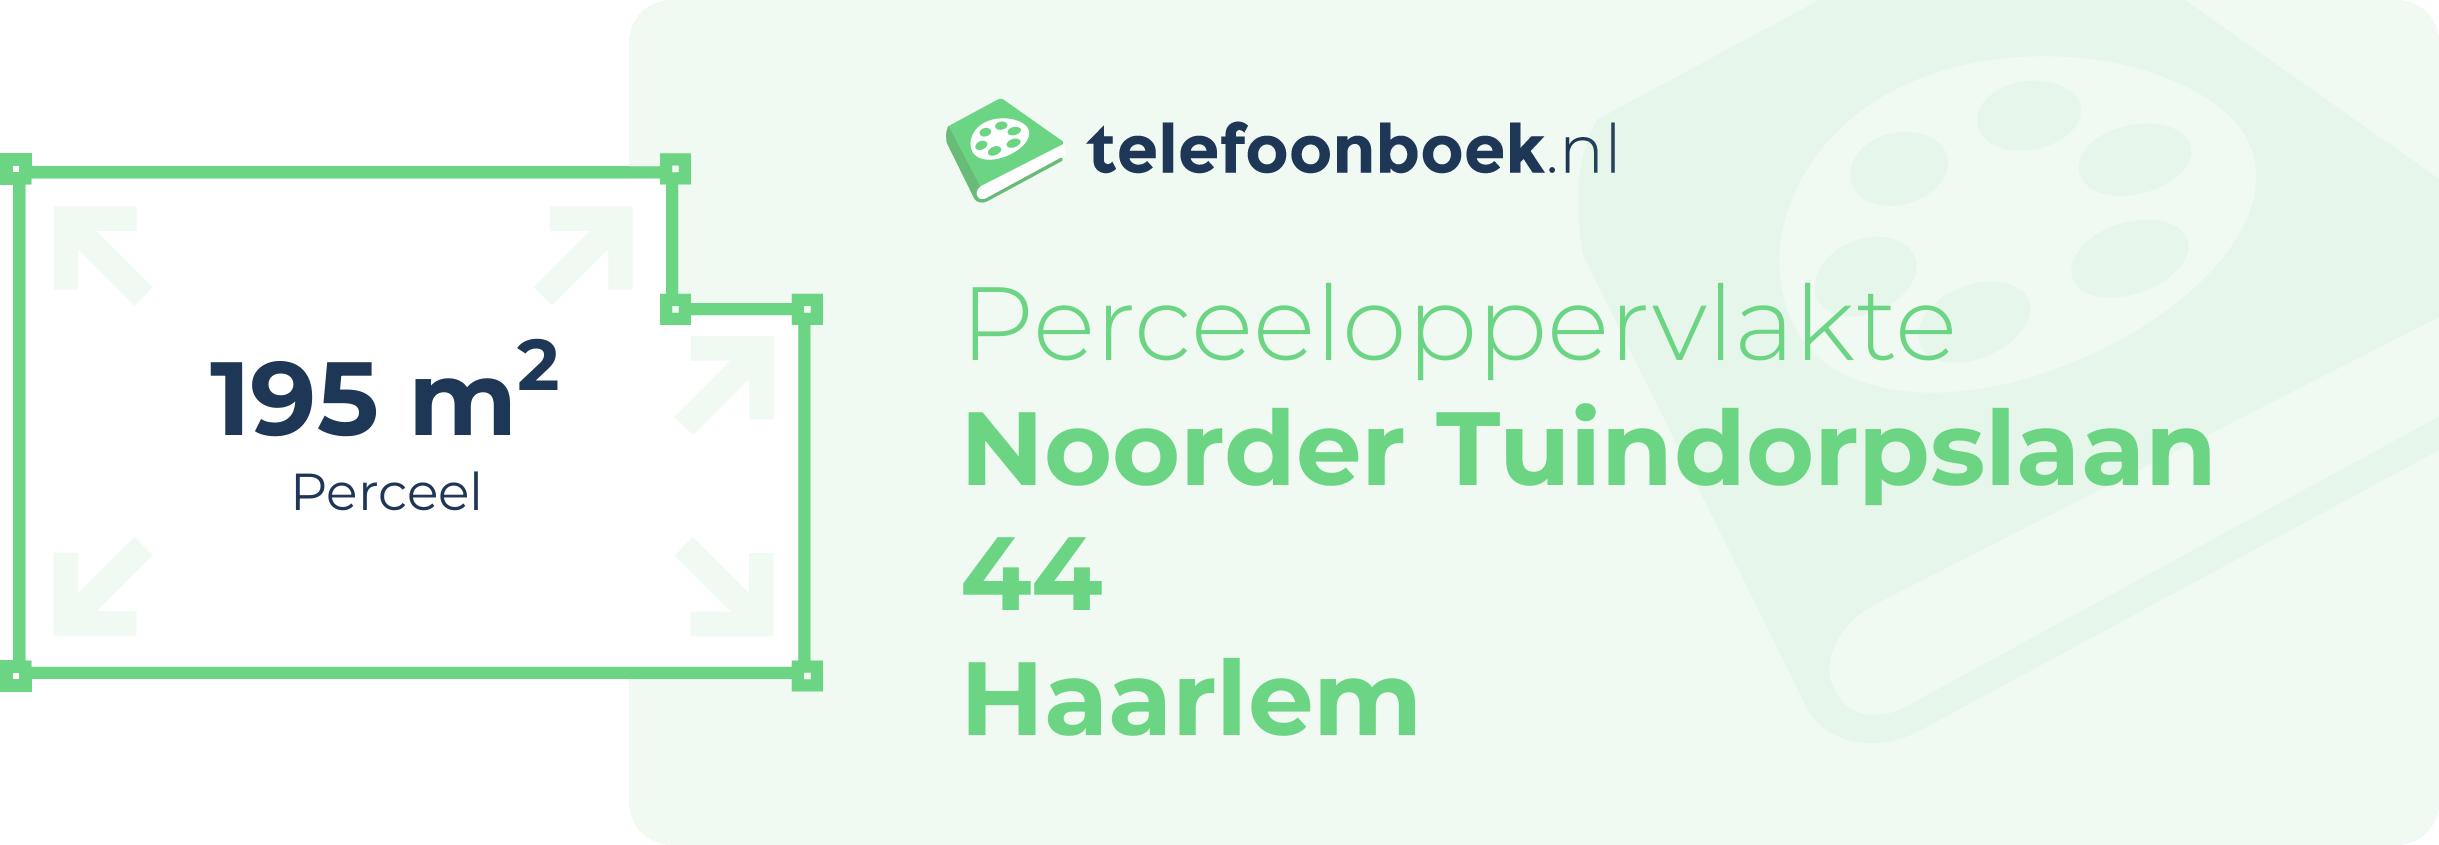 Perceeloppervlakte Noorder Tuindorpslaan 44 Haarlem